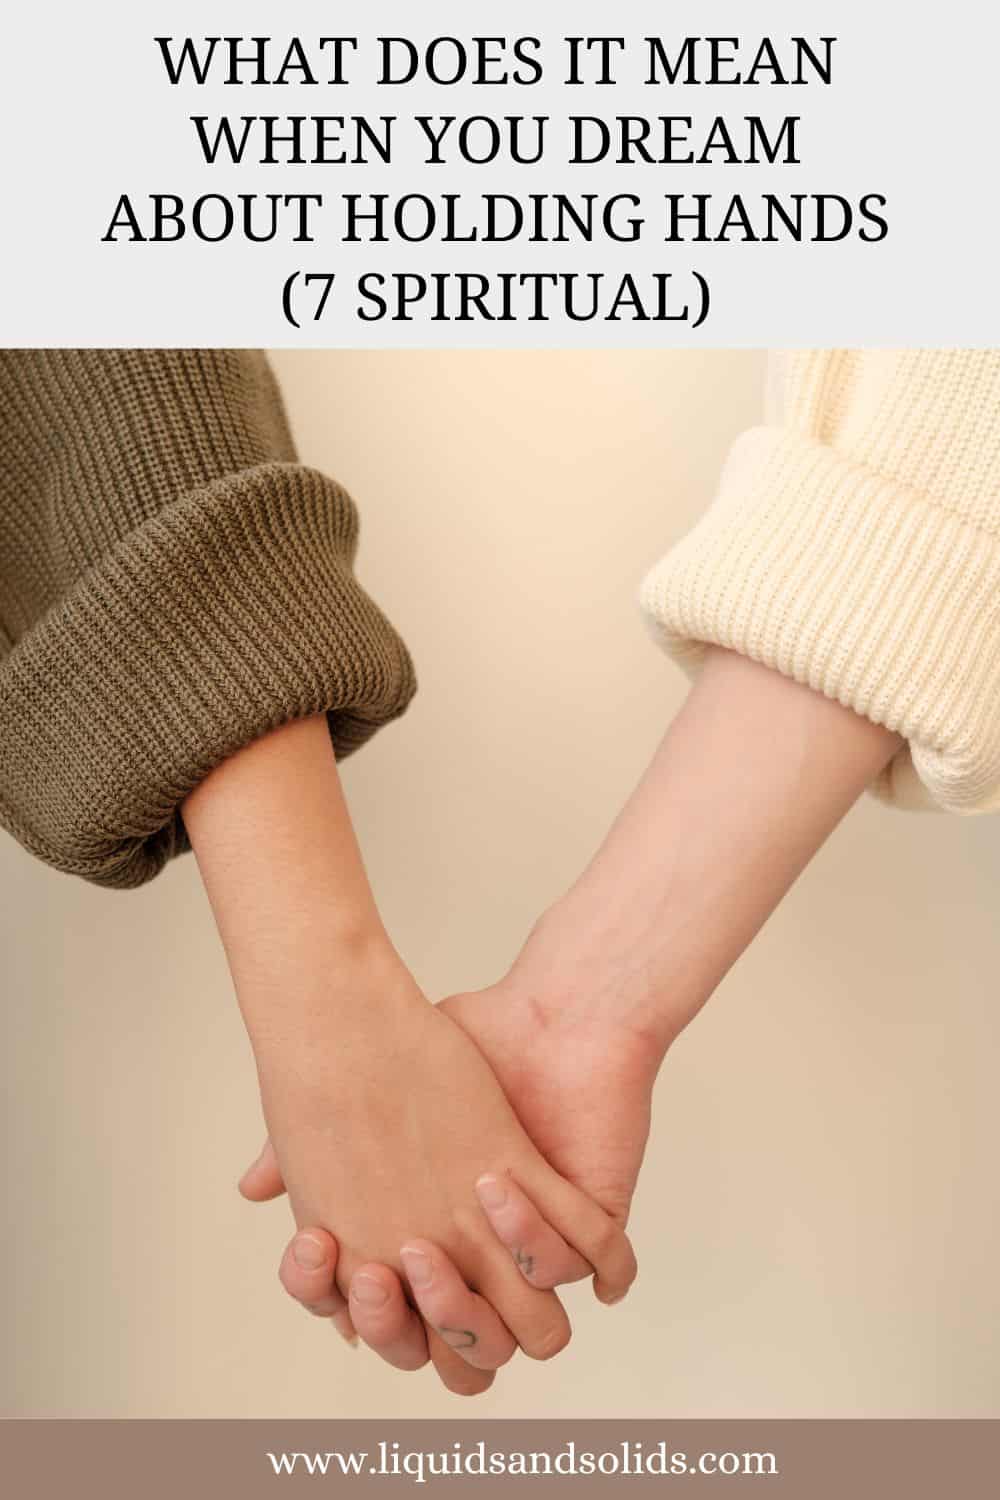  Drøm om at holde i hånd? (7 spirituelle betydninger)